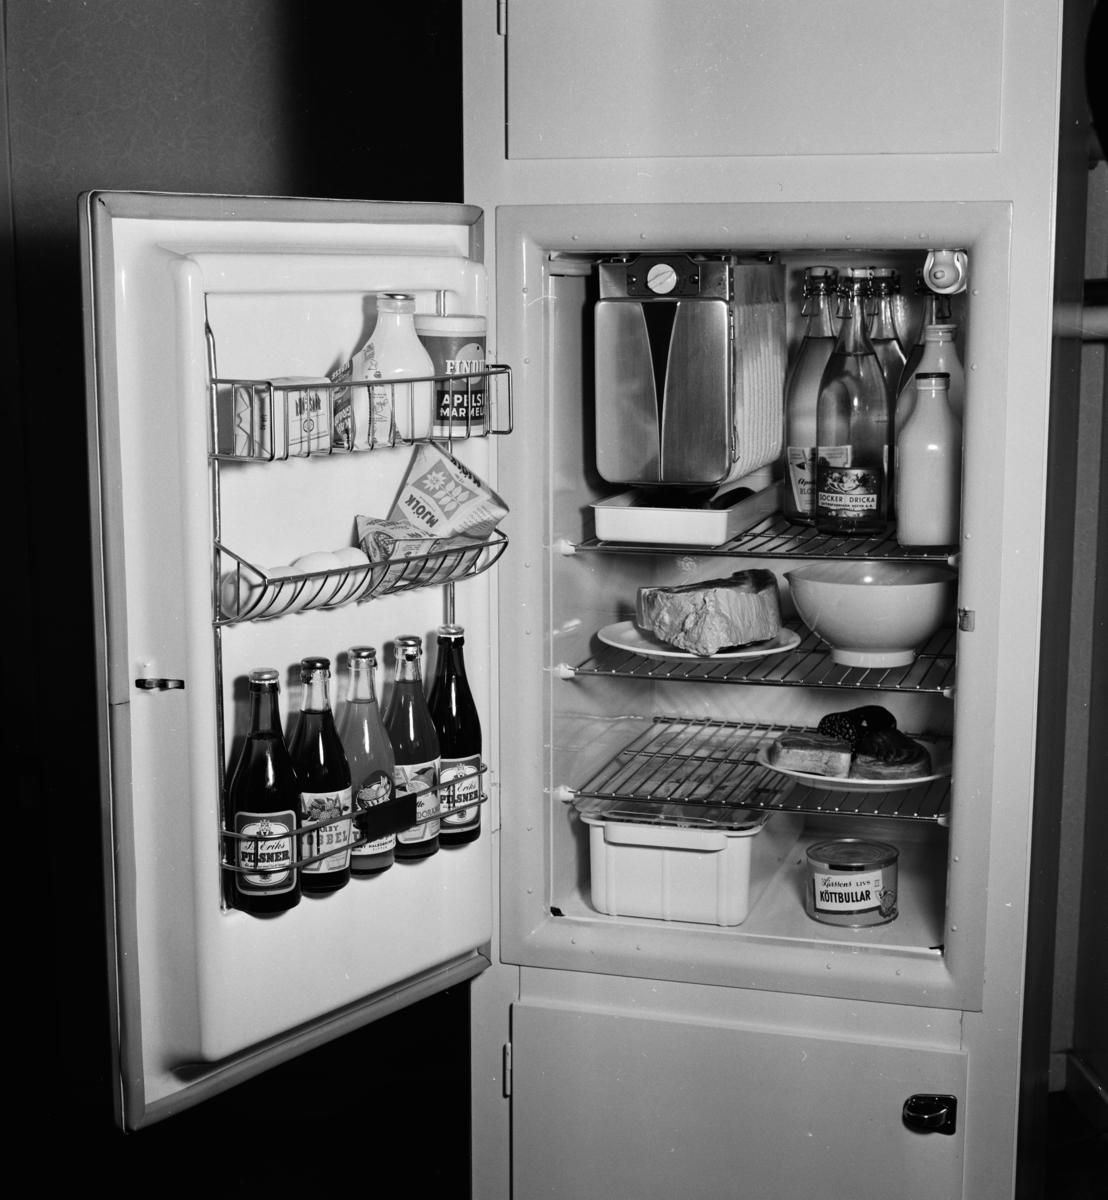 Ny kylskåpsmodell
Interiör, öppet kylskåp med mat